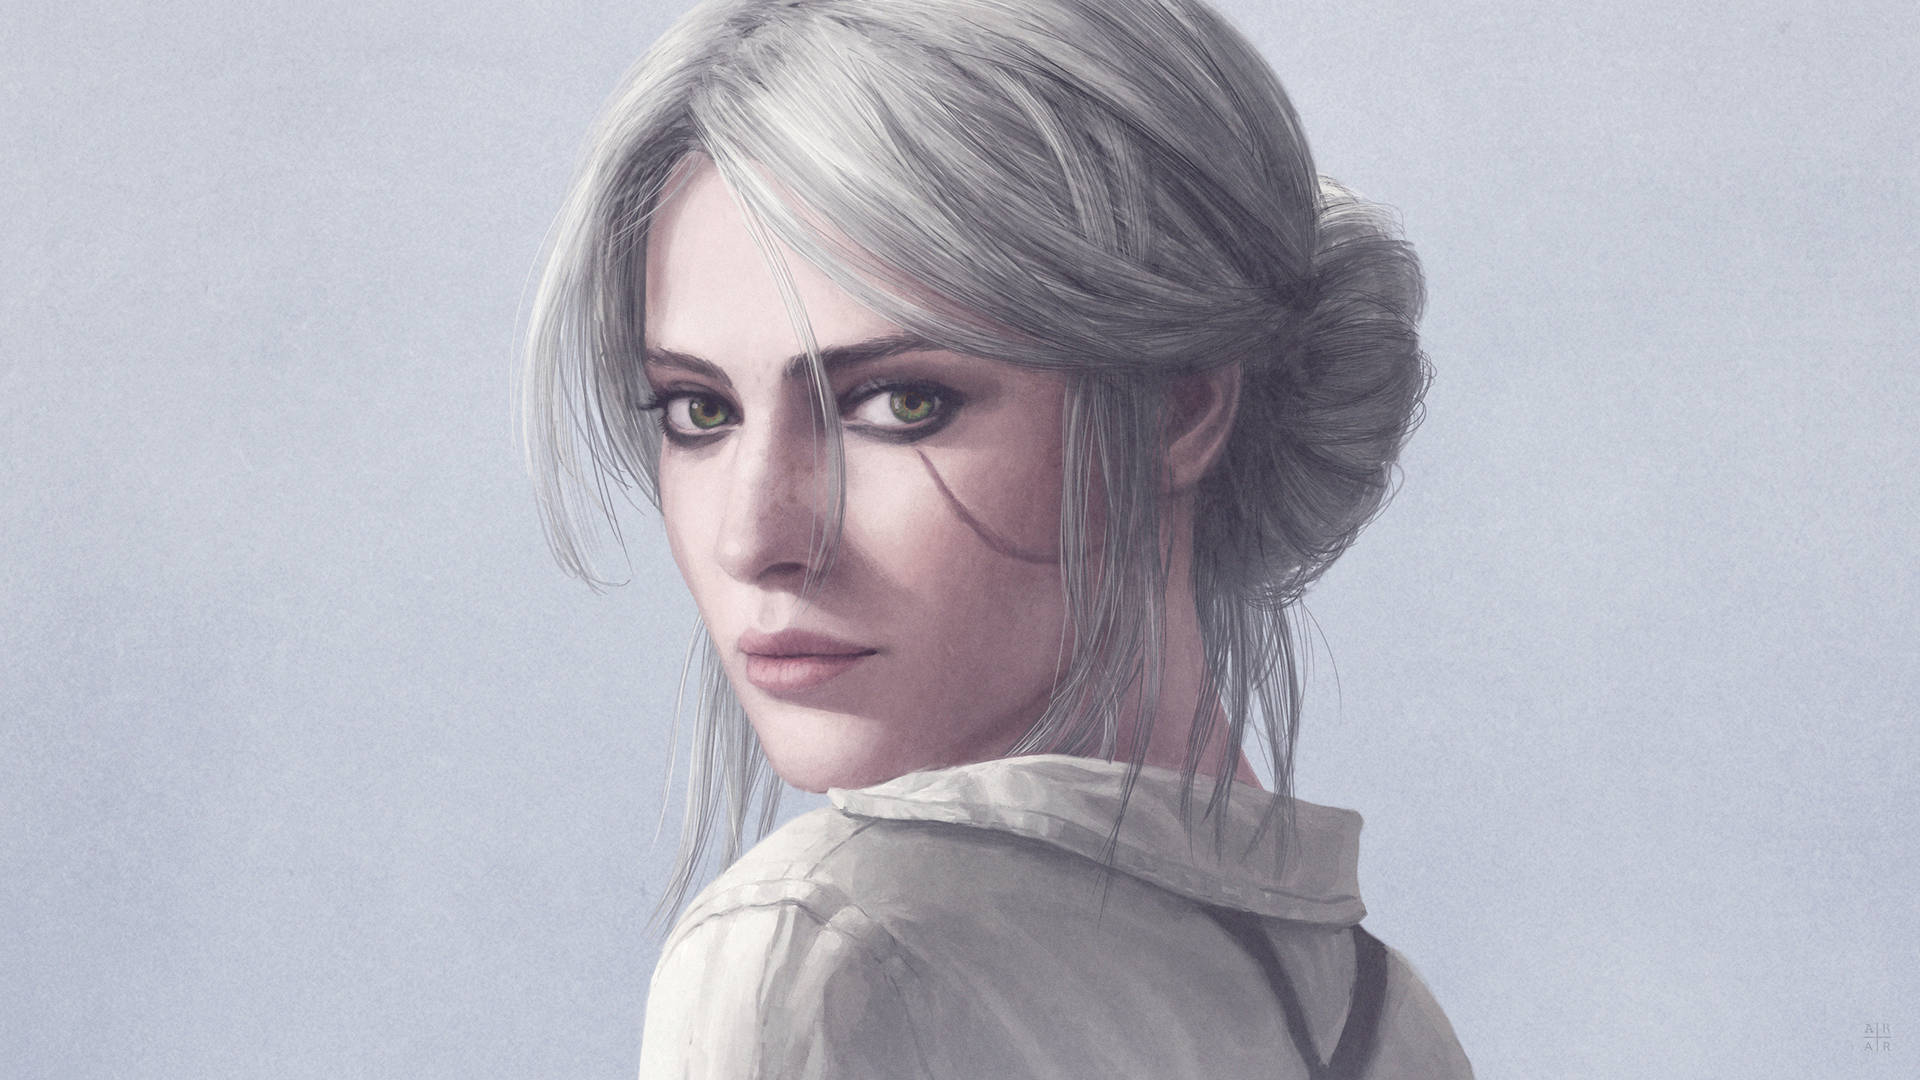 Ciri,eine Protagonistin Von The Witcher 3, Porträt. Wallpaper